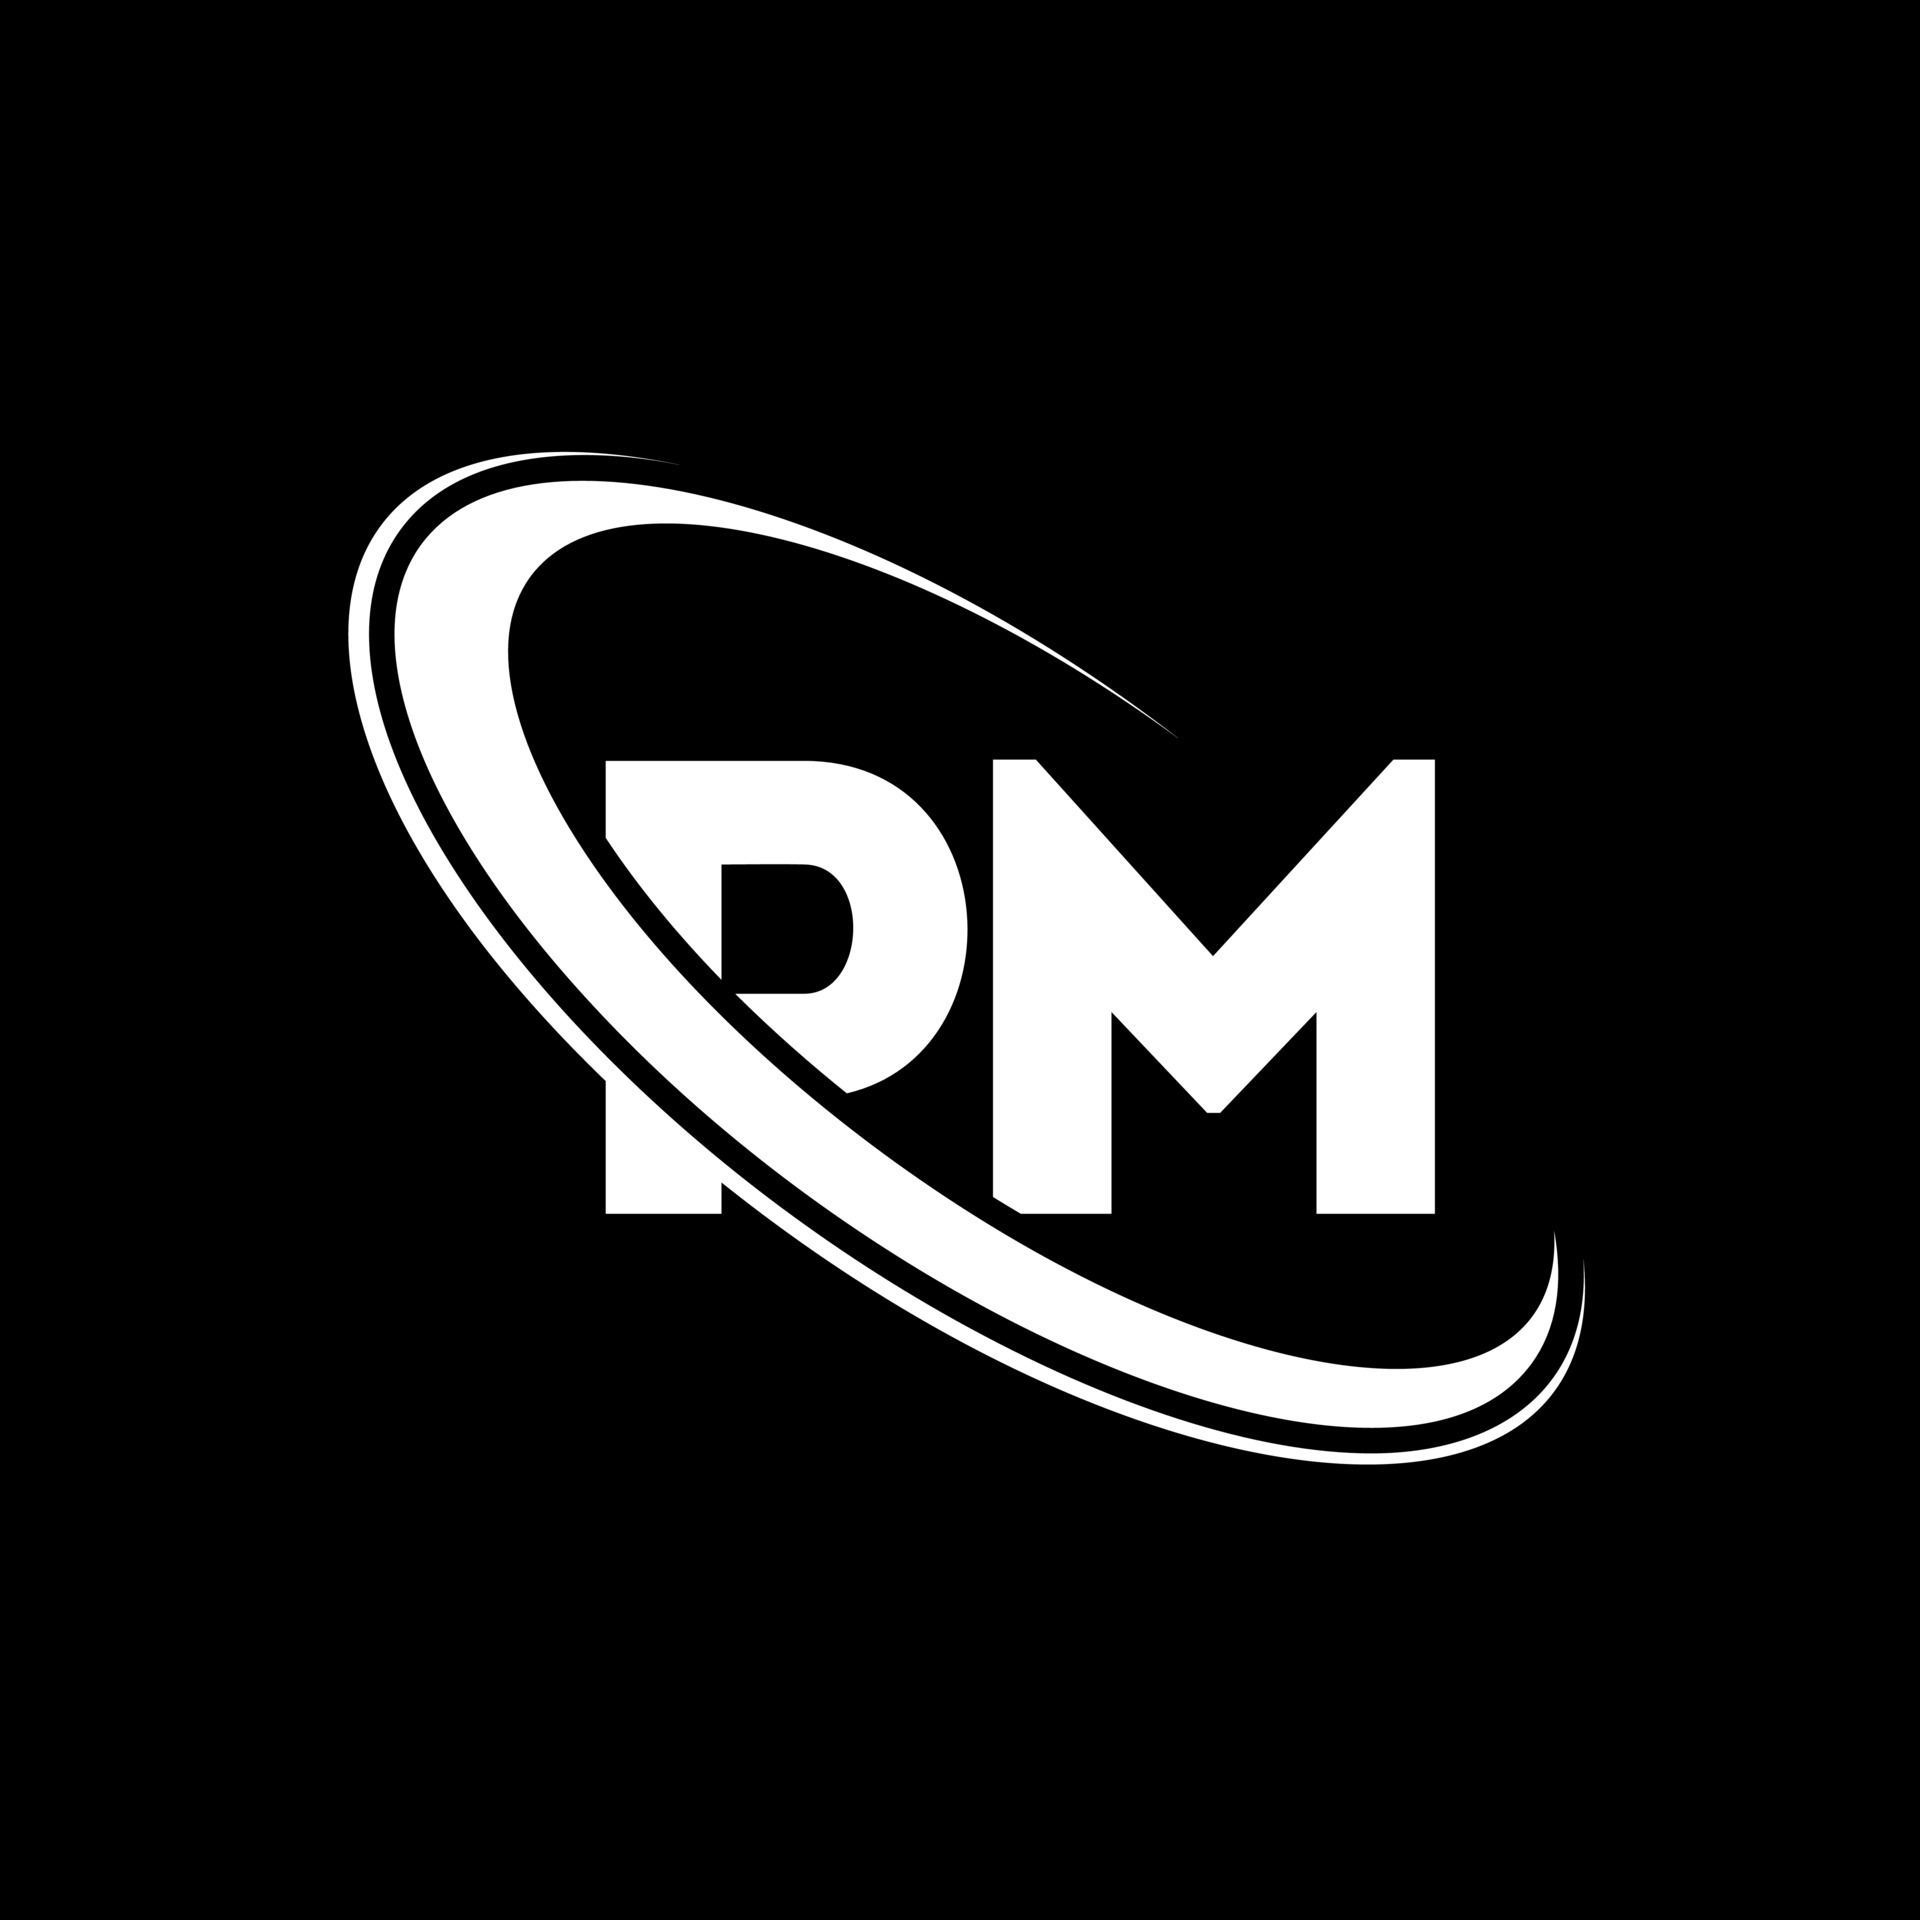 Premium Vector  Initial pm monogram logo design